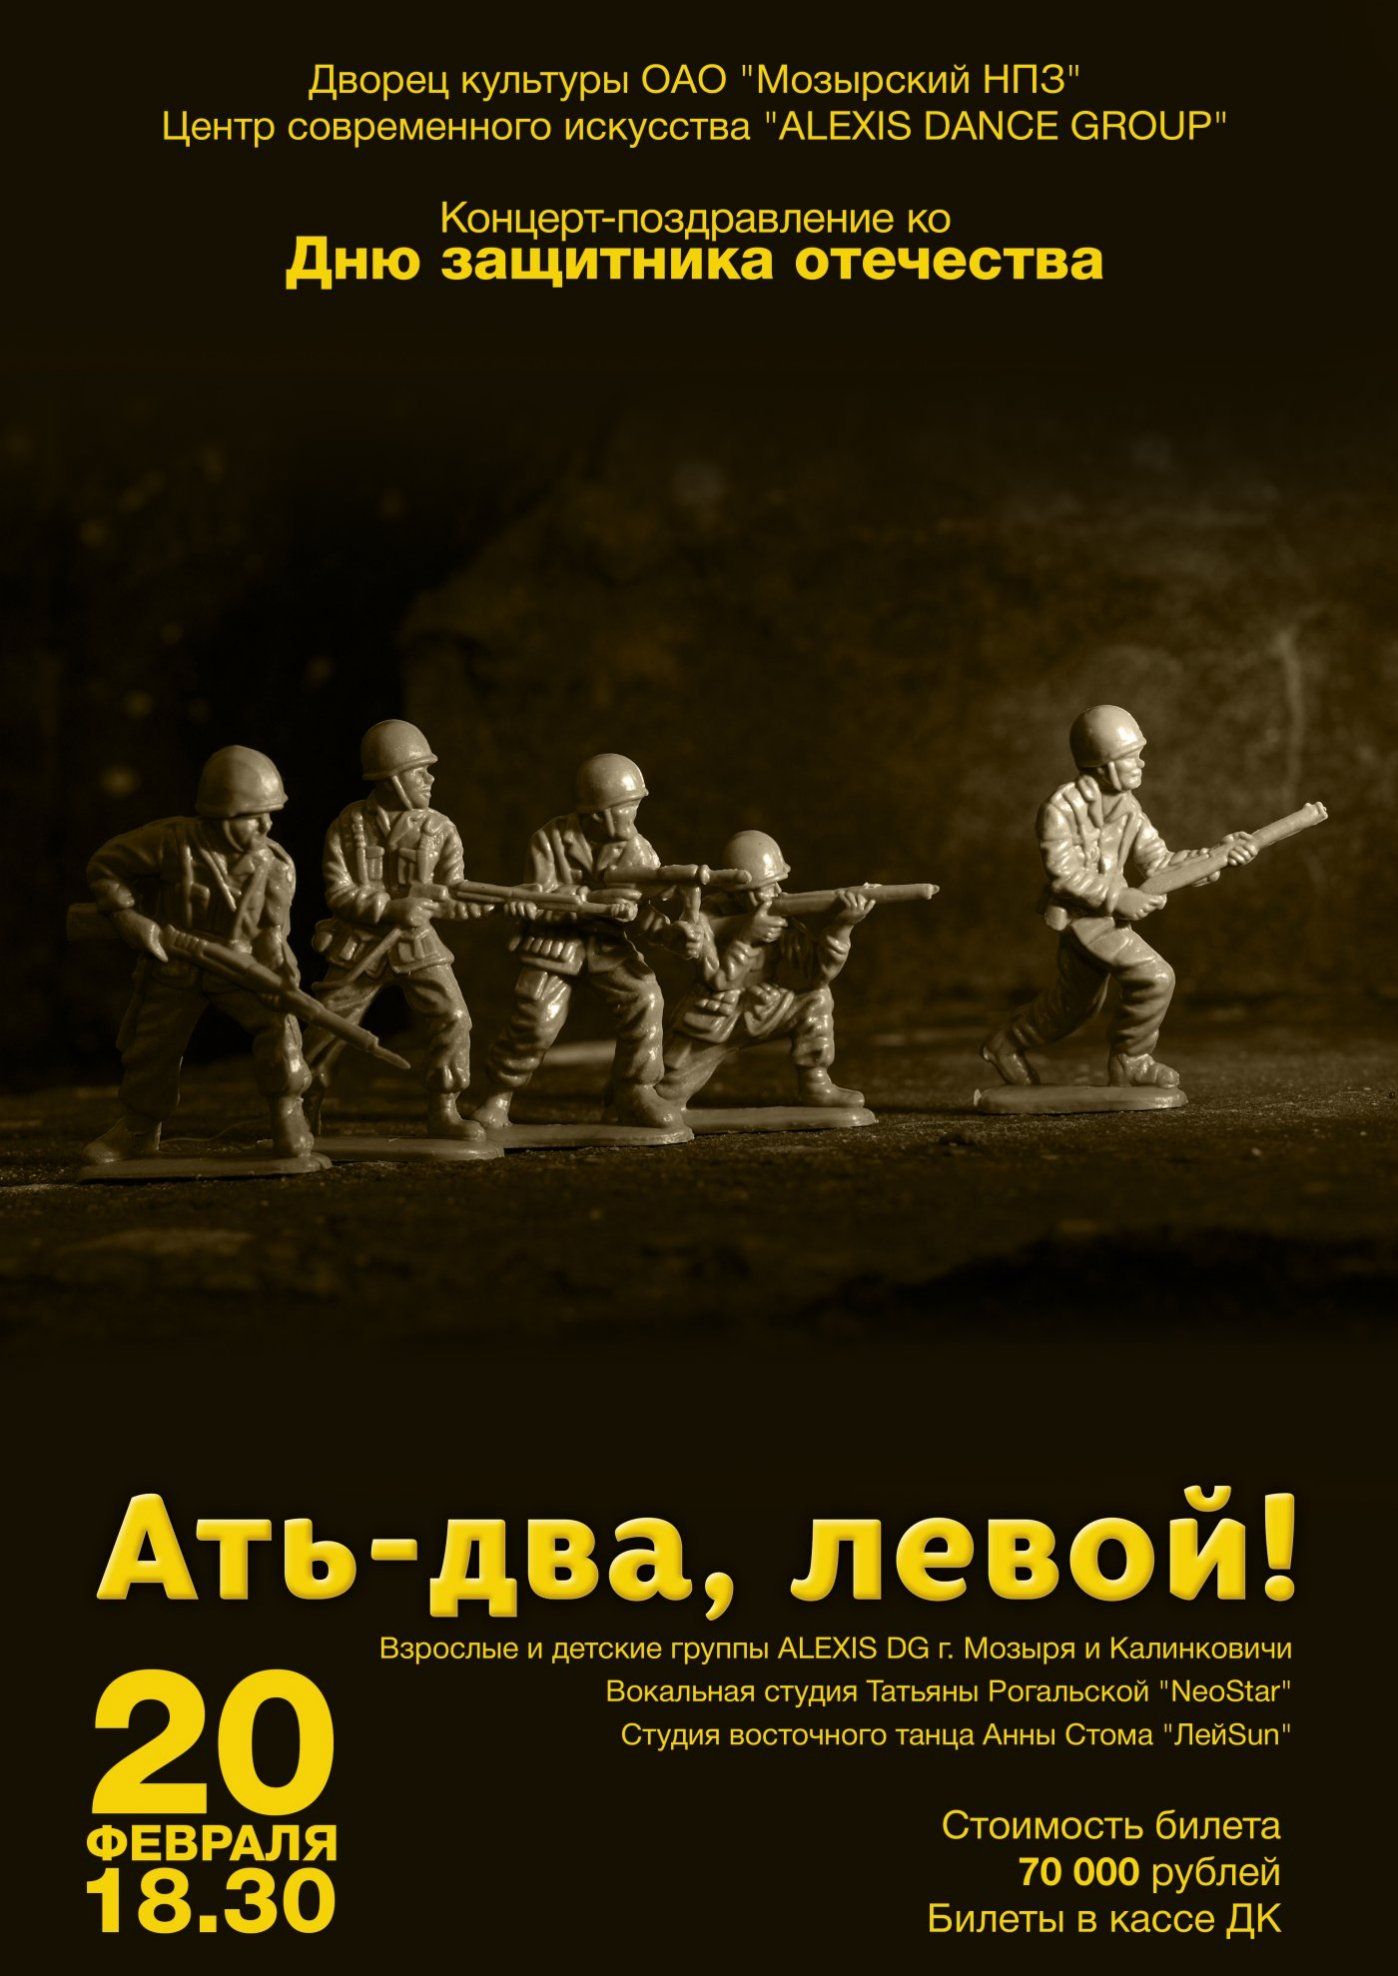 Концерт-поздравление ко Дню Защитника Отечества "Ать-два, левой!"